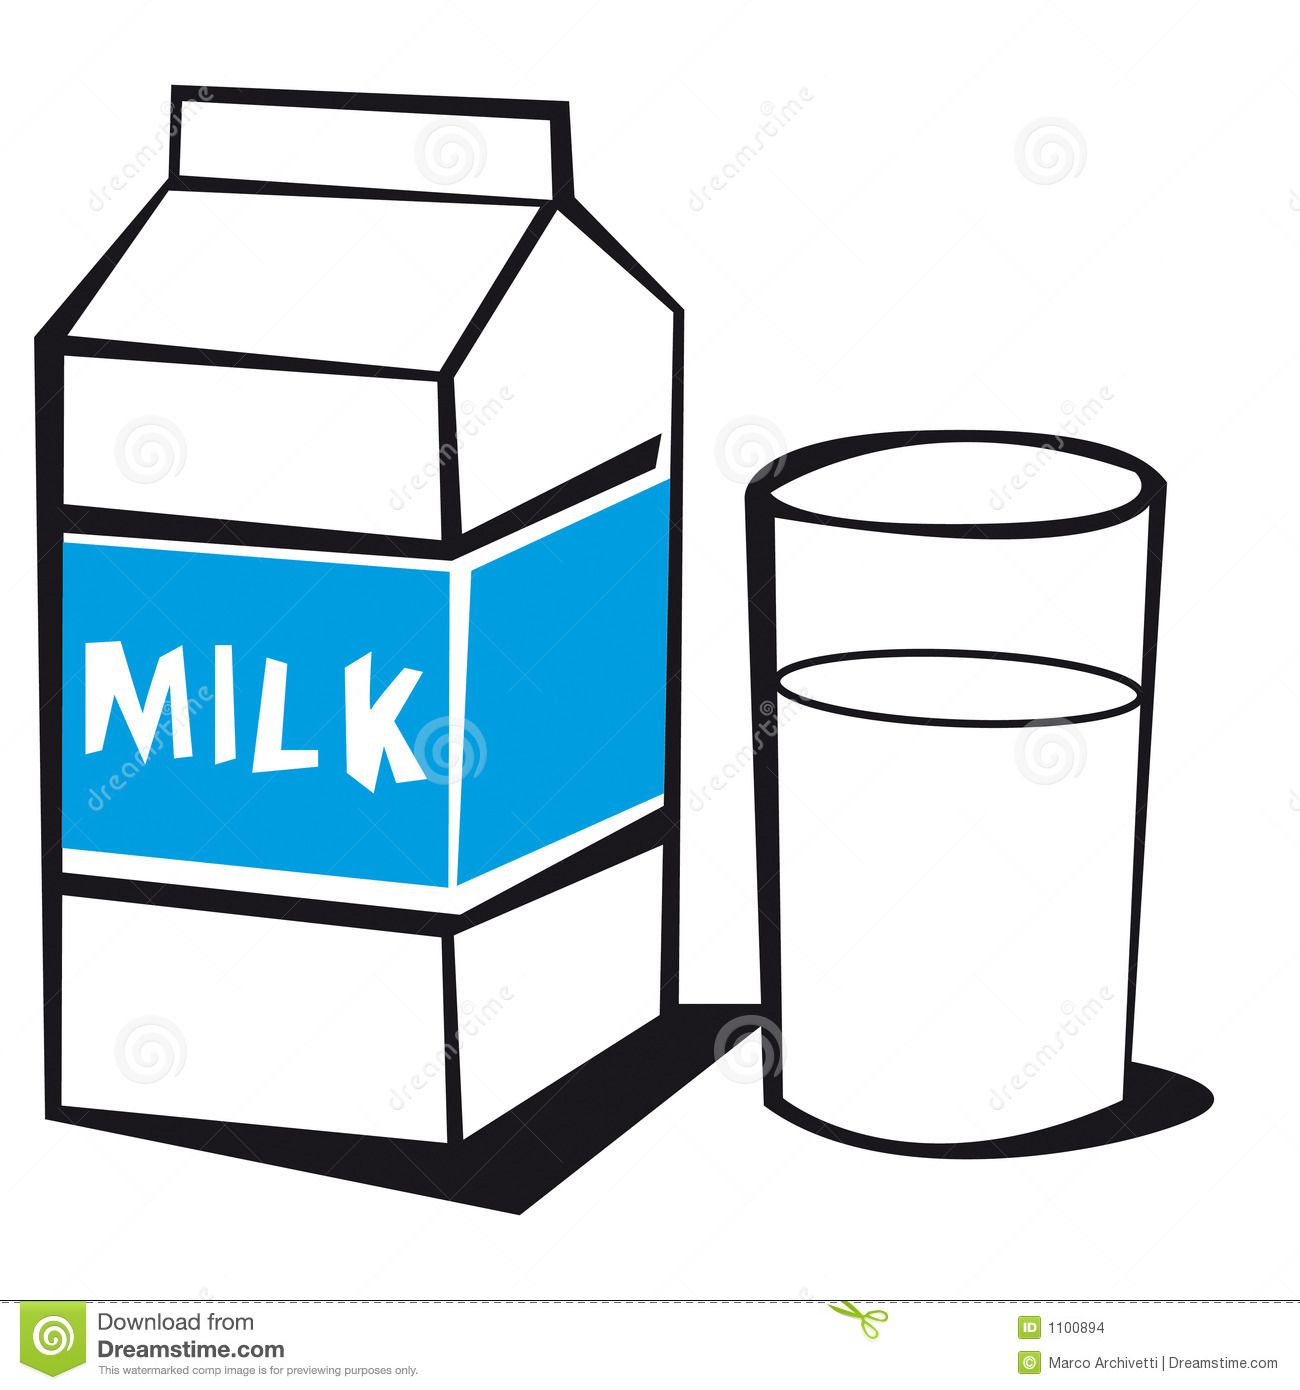 milk clipart u0026middot; milk clipart